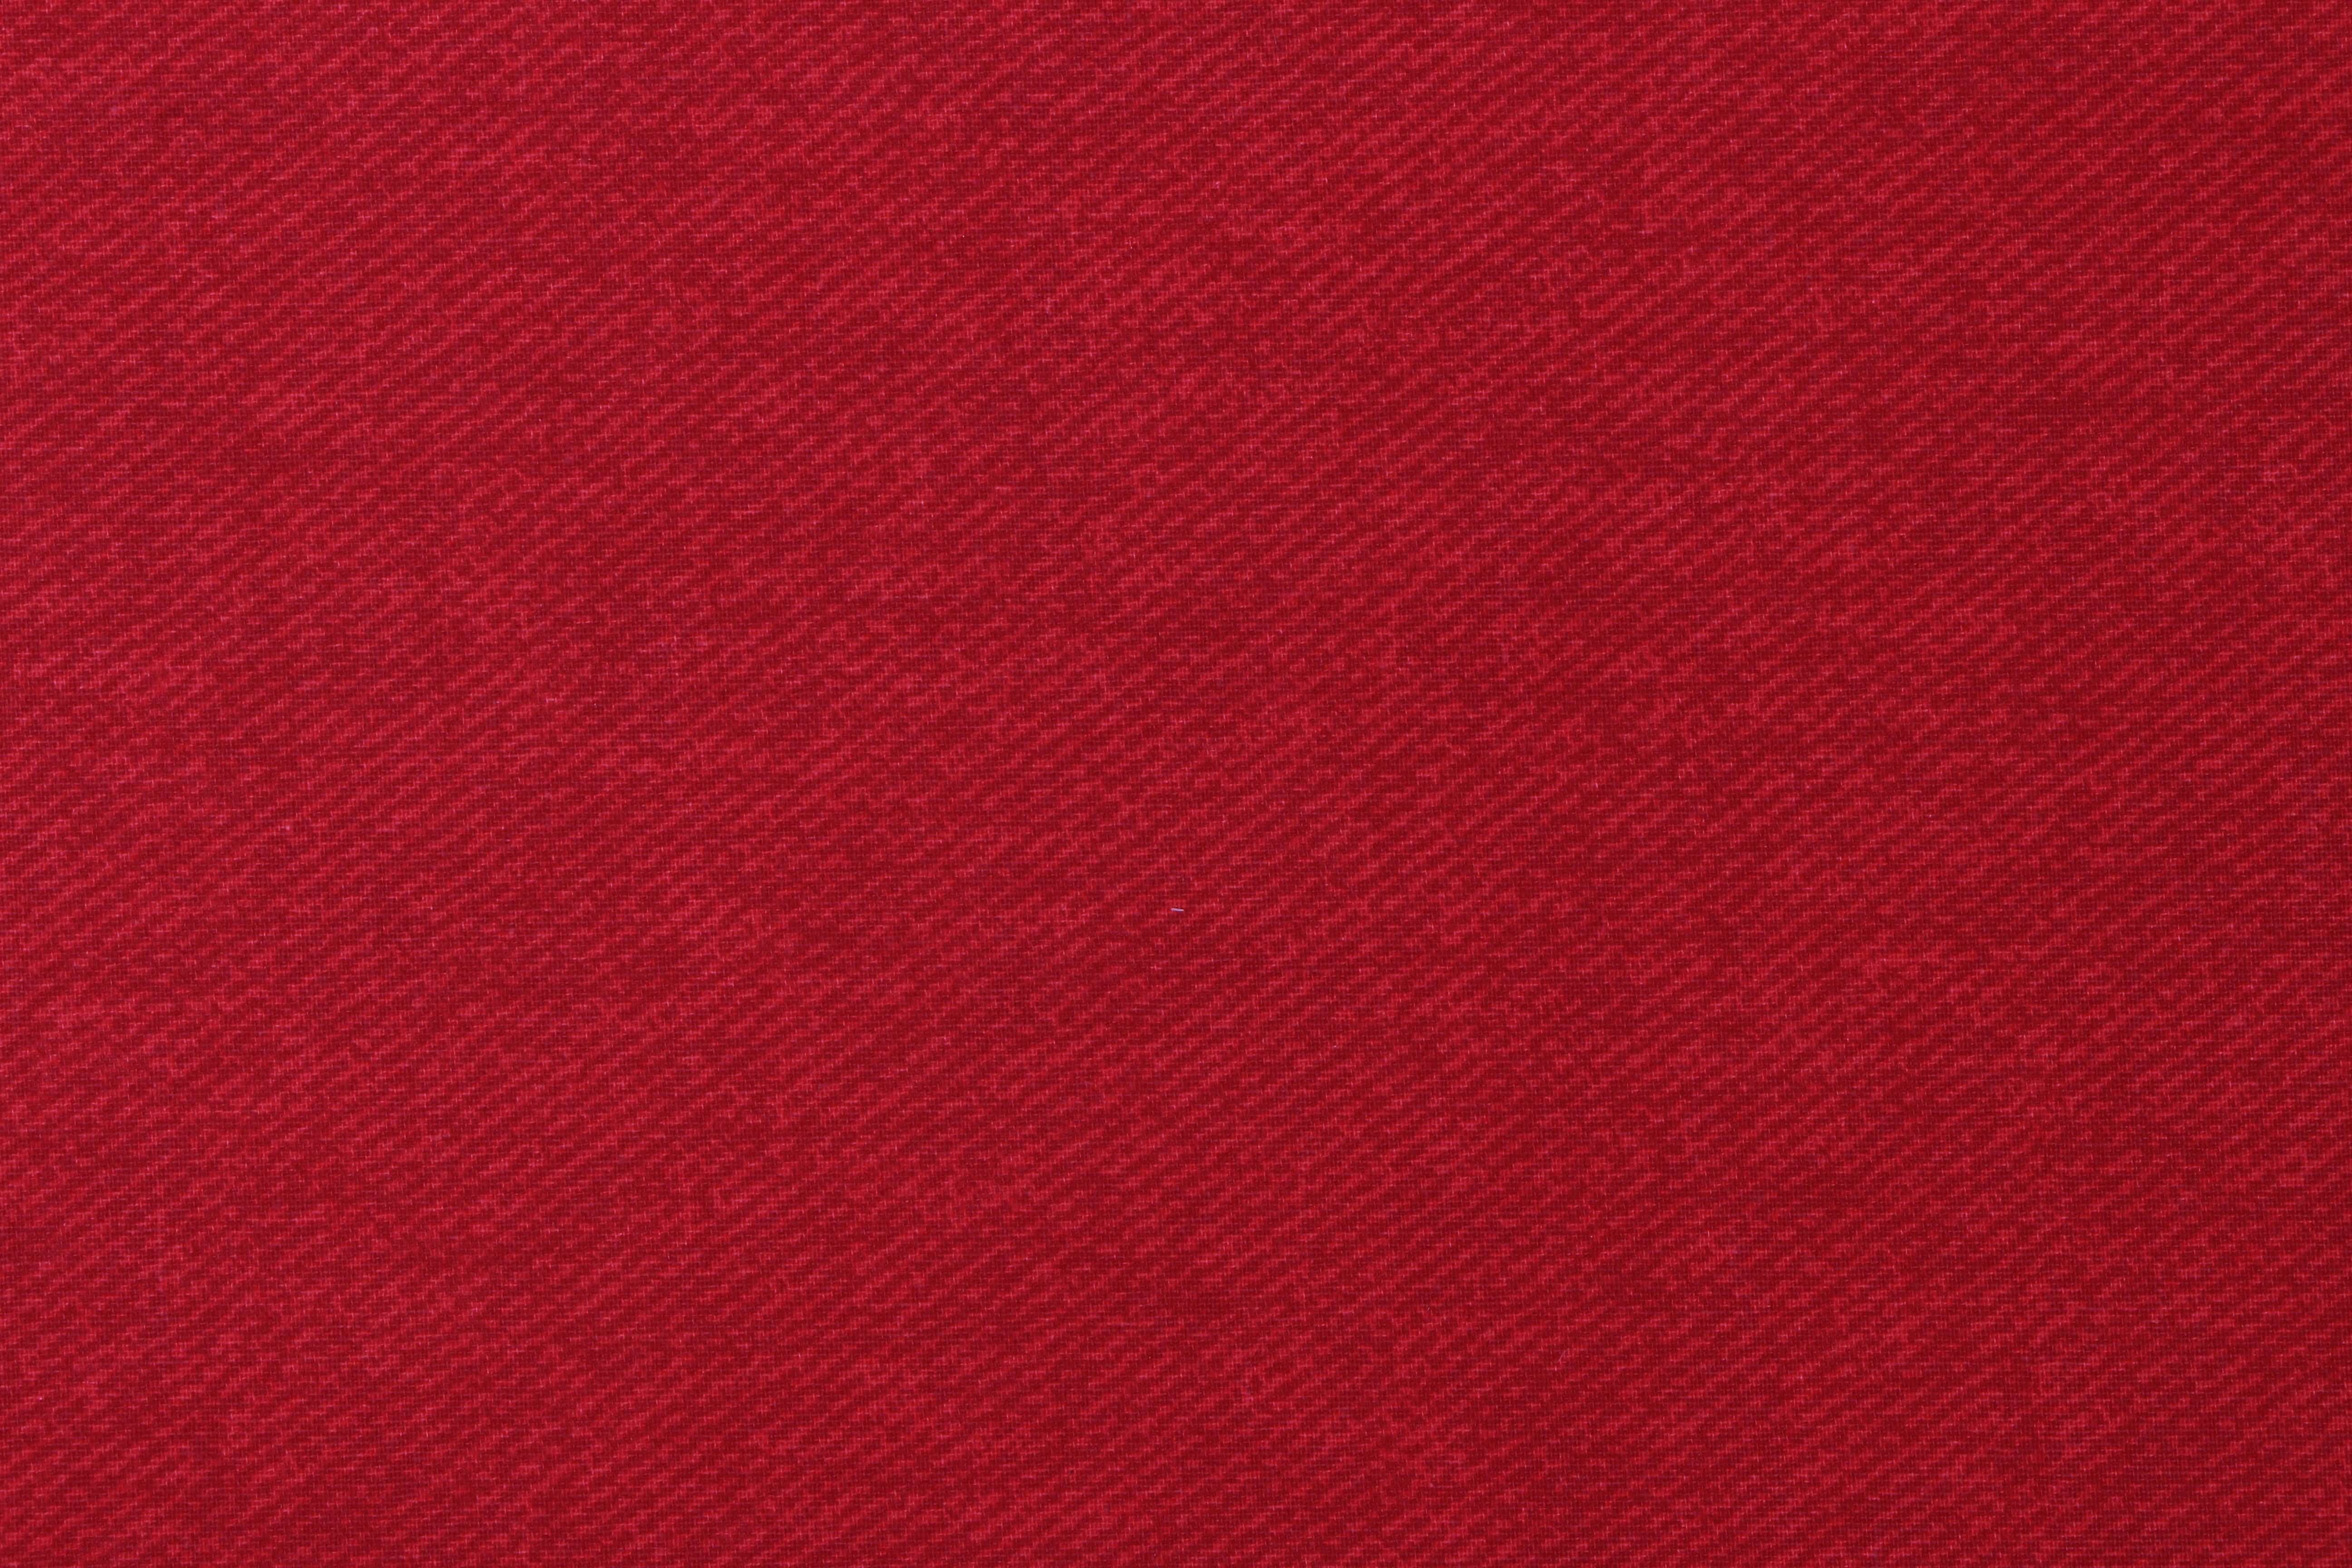 BANKAUFLAGE  Uni  - Rot, KONVENTIONELL, Textil (42/6/88cm) - Siena Garden